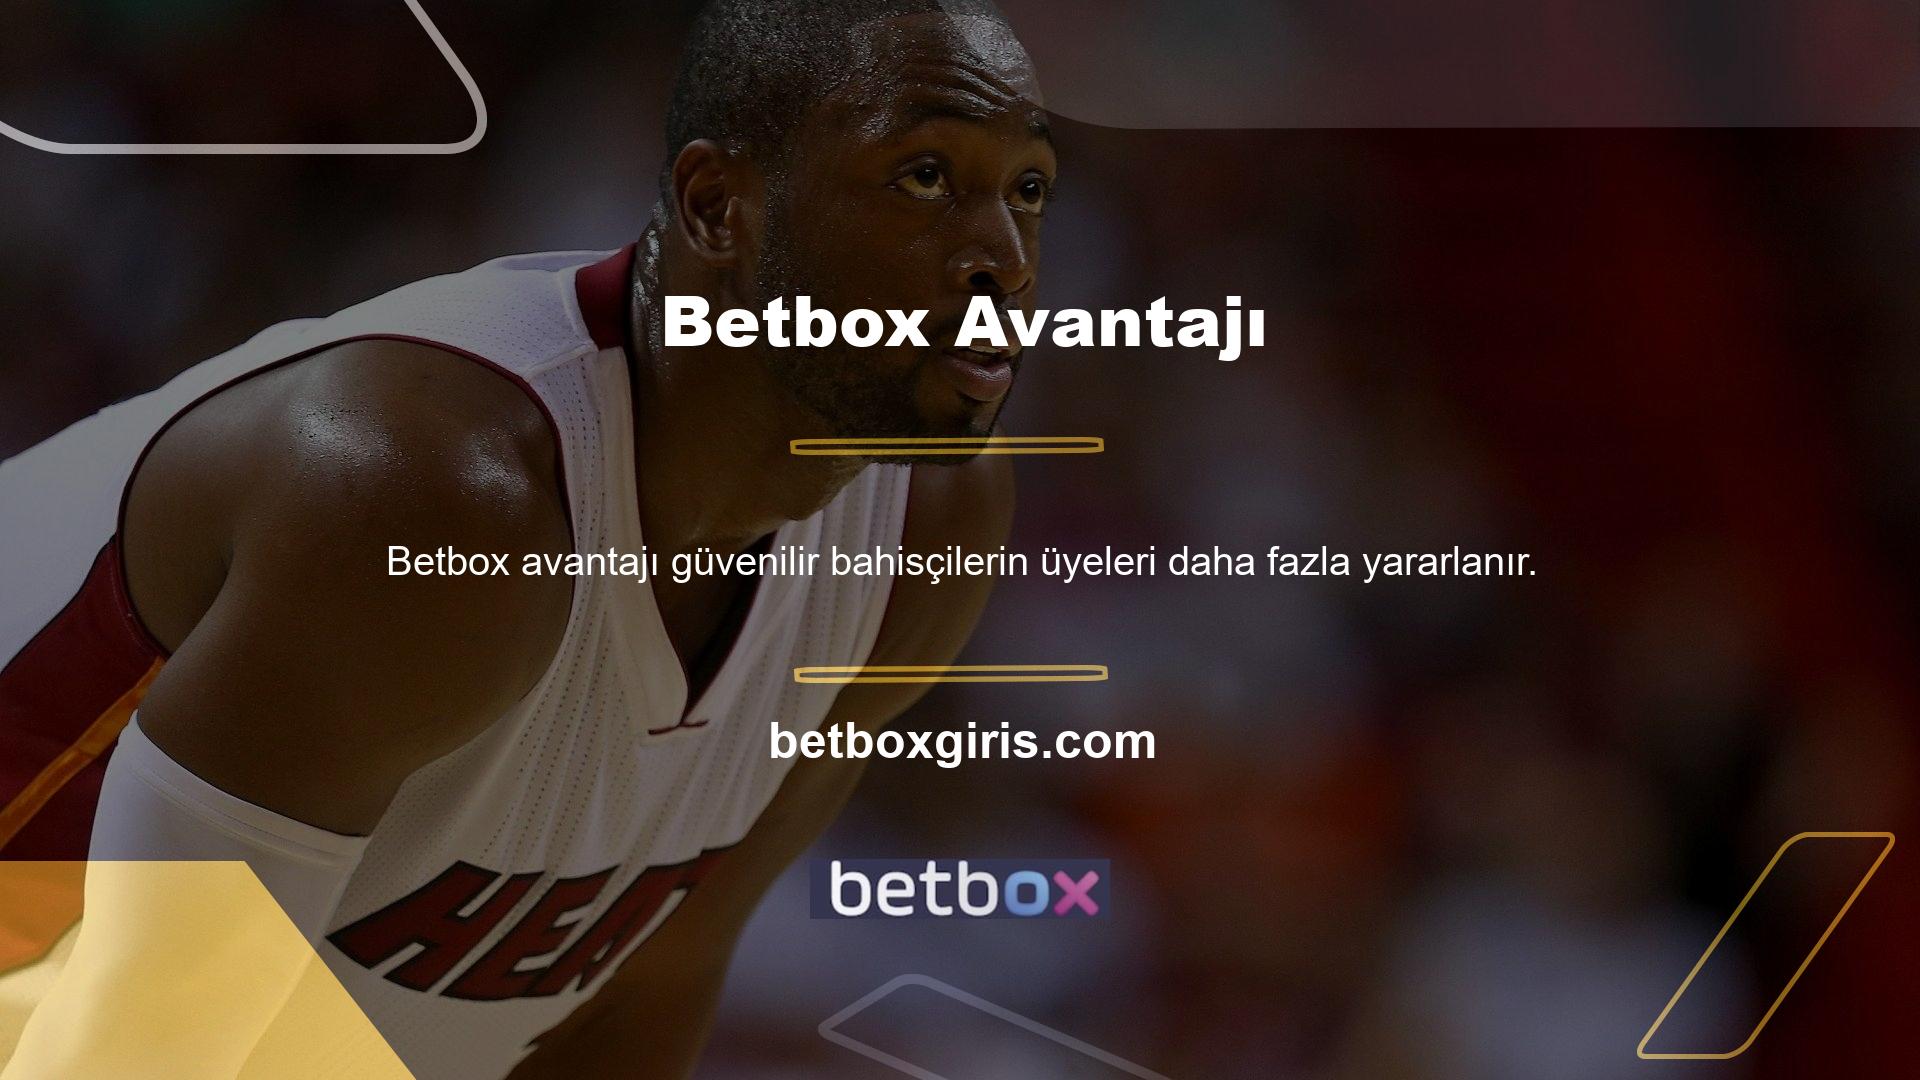 Betbox Advantage, oyuncularına bahis garantisi veren bahis şirketlerinden biridir